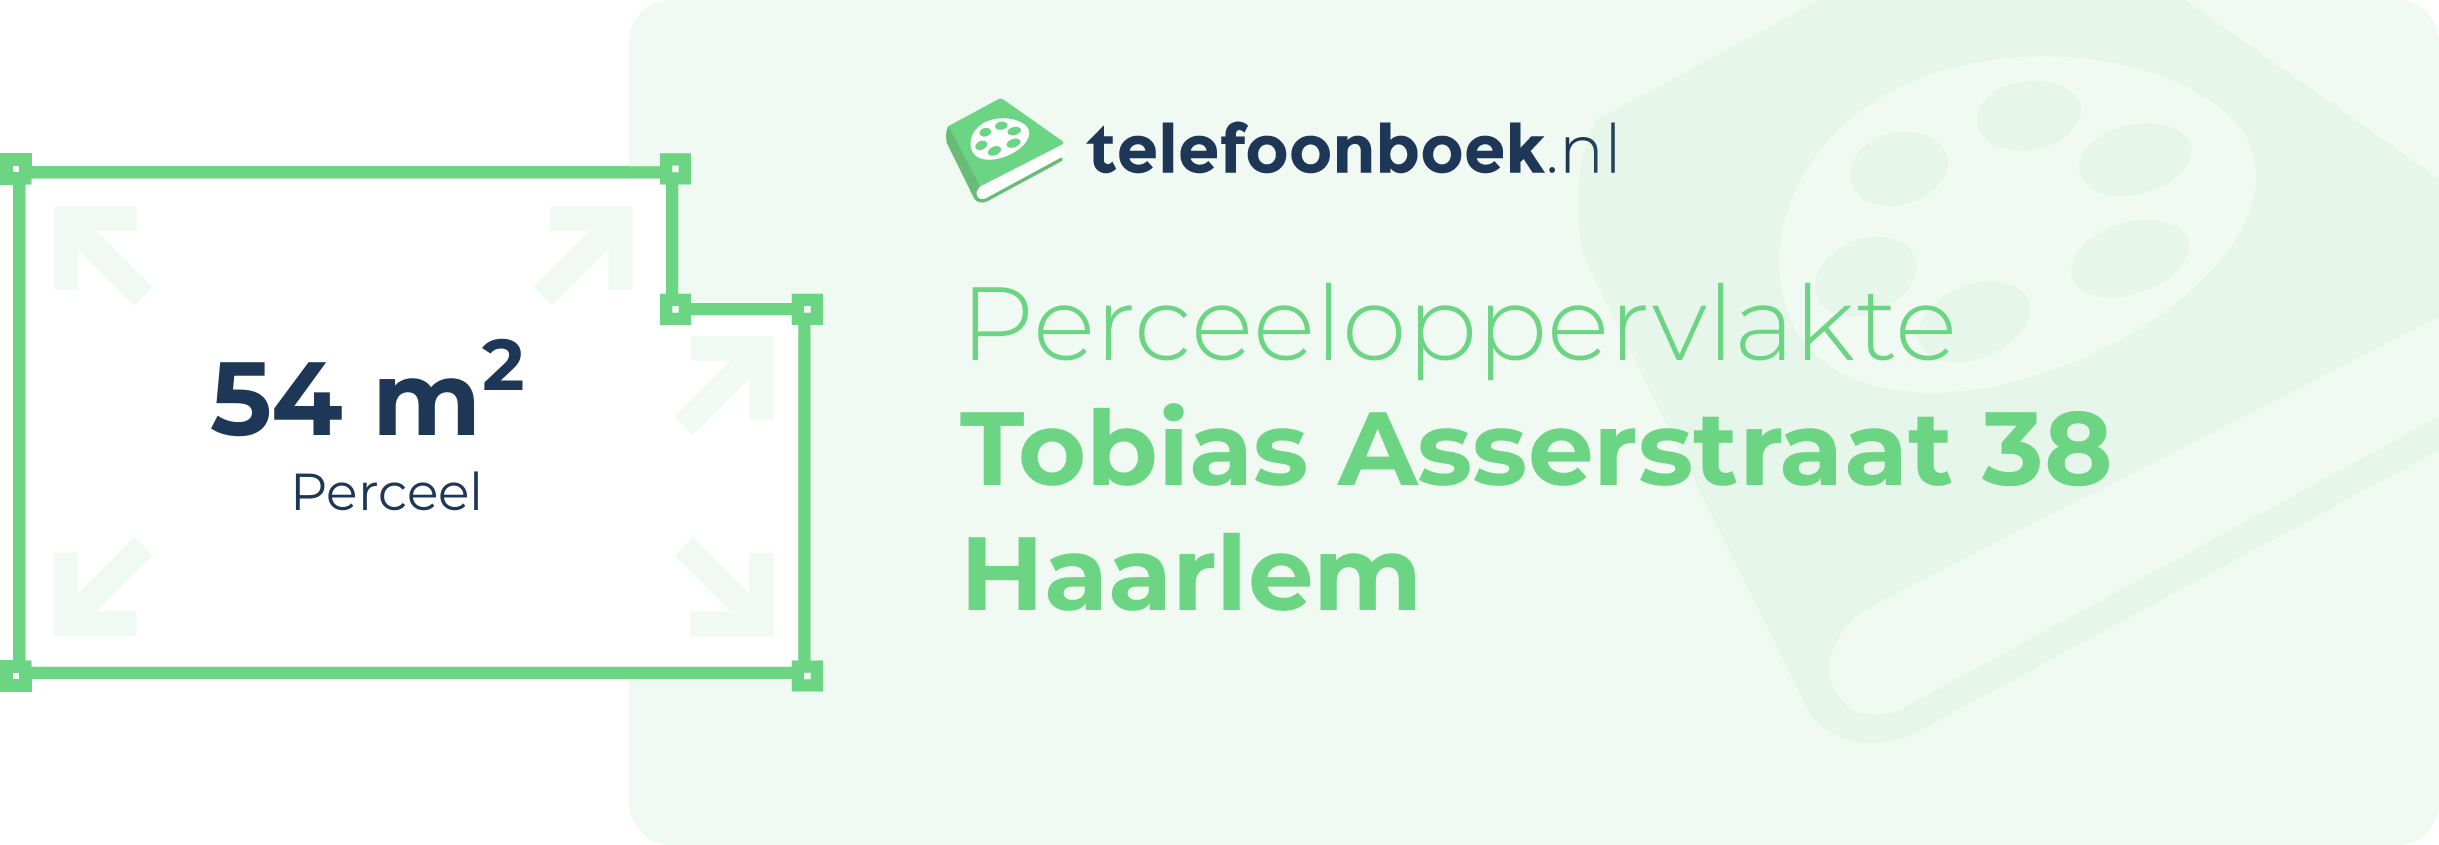 Perceeloppervlakte Tobias Asserstraat 38 Haarlem